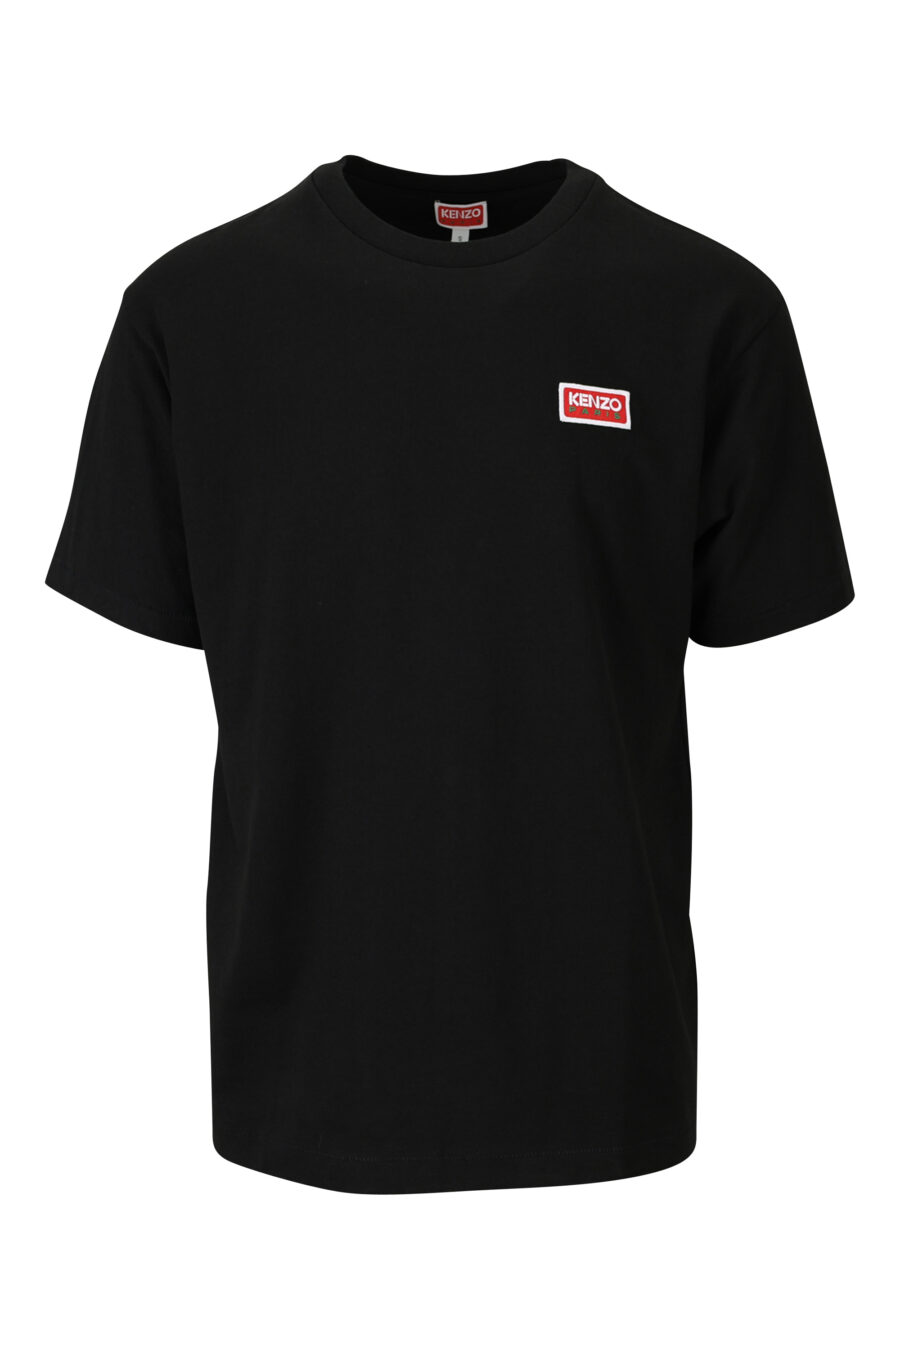 Schwarzes T-shirt mit kleinem Logo "kenzo paris" - 3612230542990